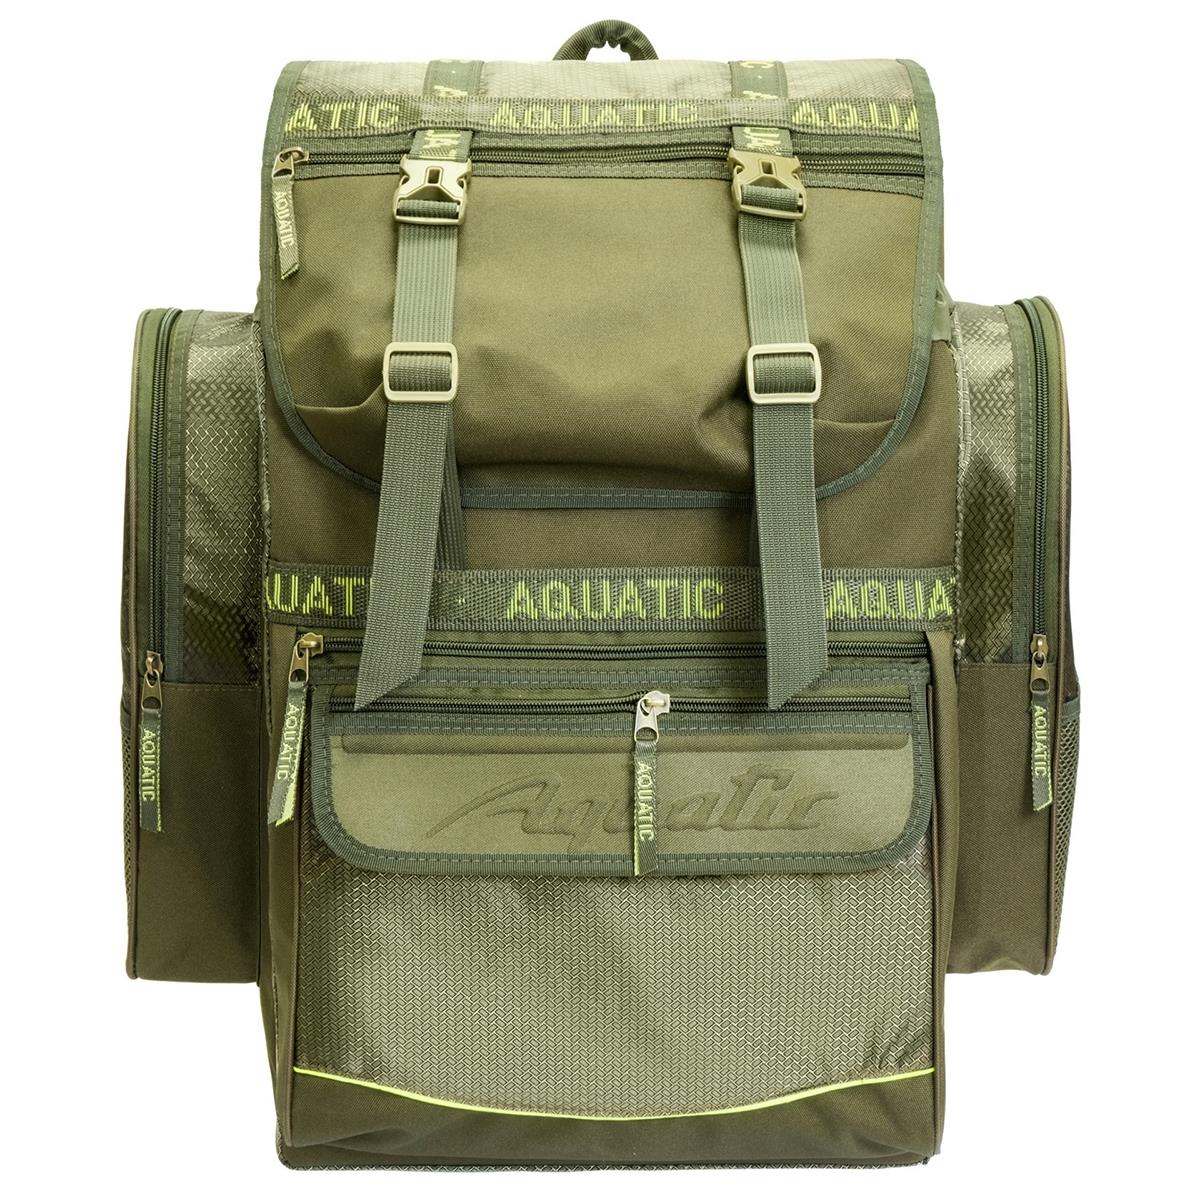 Рюкзак рыболовный (Р-60) Aquatic рюкзак рыболовный р 30м aquatic